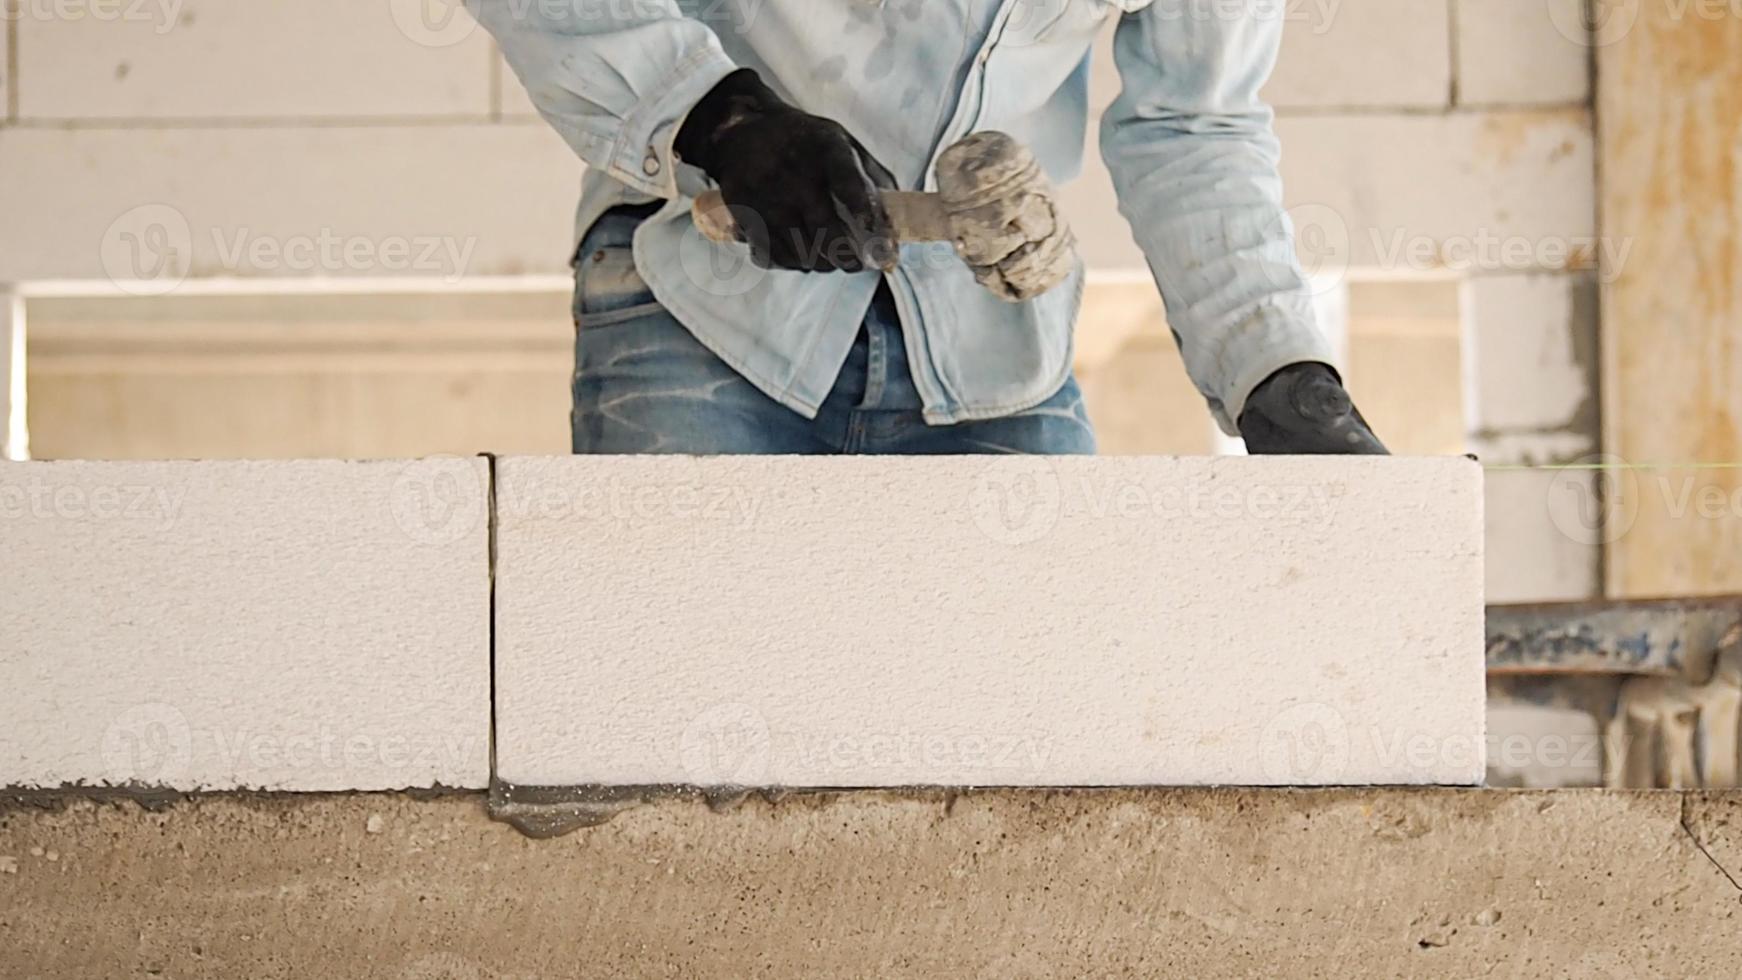 trabalhadores da construção civil estão fazendo blocos de concreto leves e brancos que são melhores do que tijolos de cimento, populares na construção de casas e prédios públicos. foto